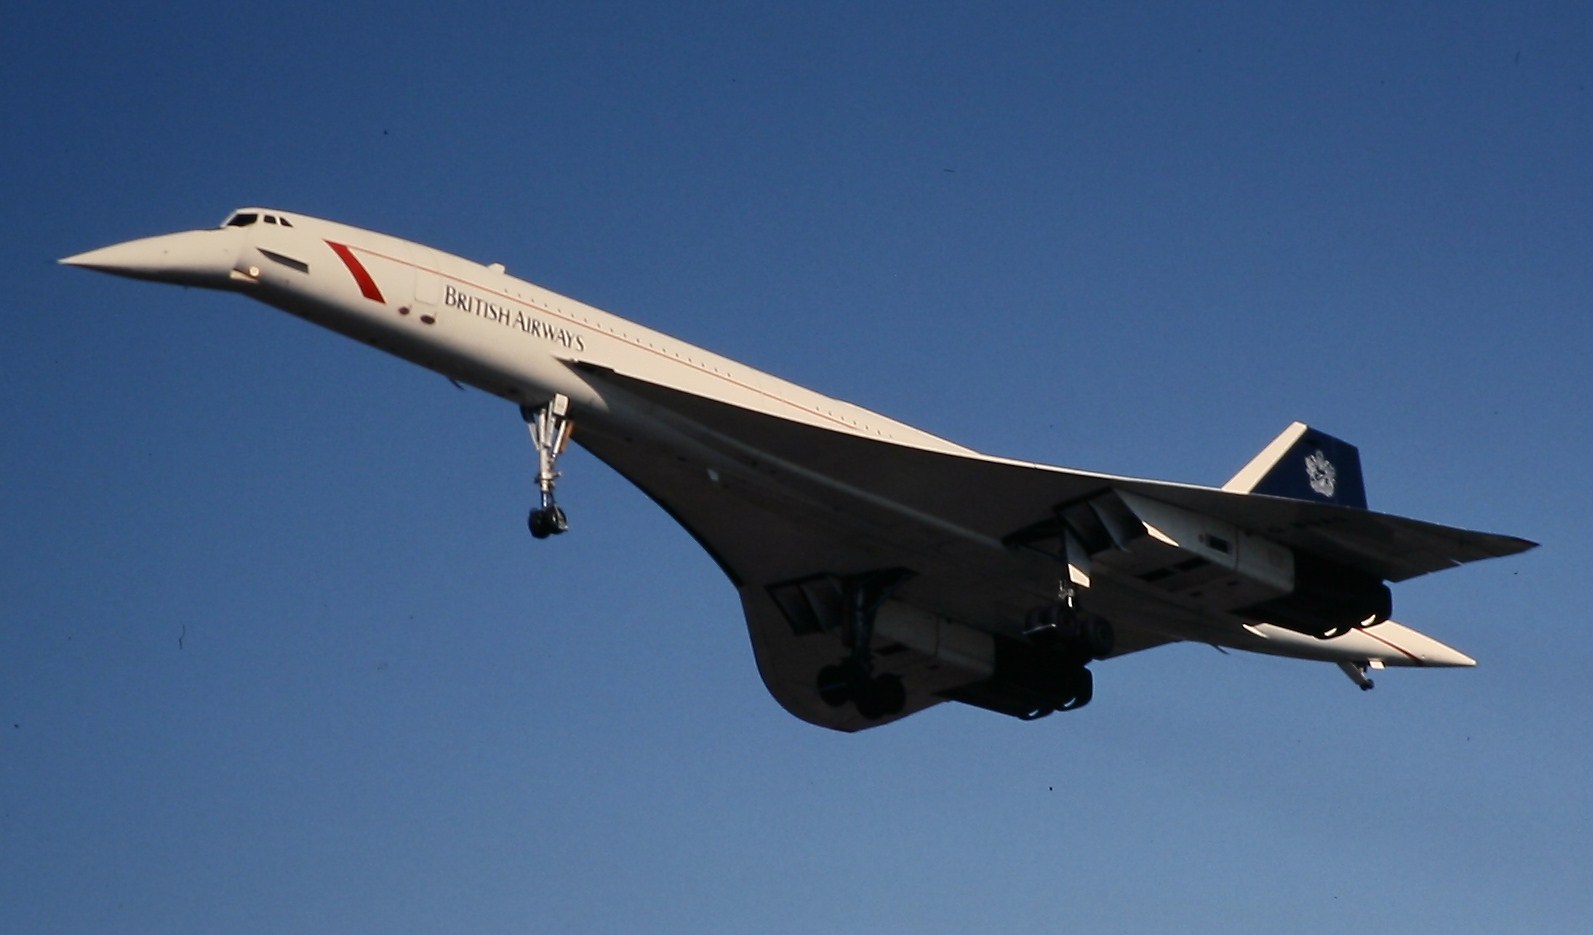 フリー画像 航空機 飛行機 旅客機 コンコルド Concorde フリー素材 画像素材なら 無料 フリー写真素材のフリーフォト